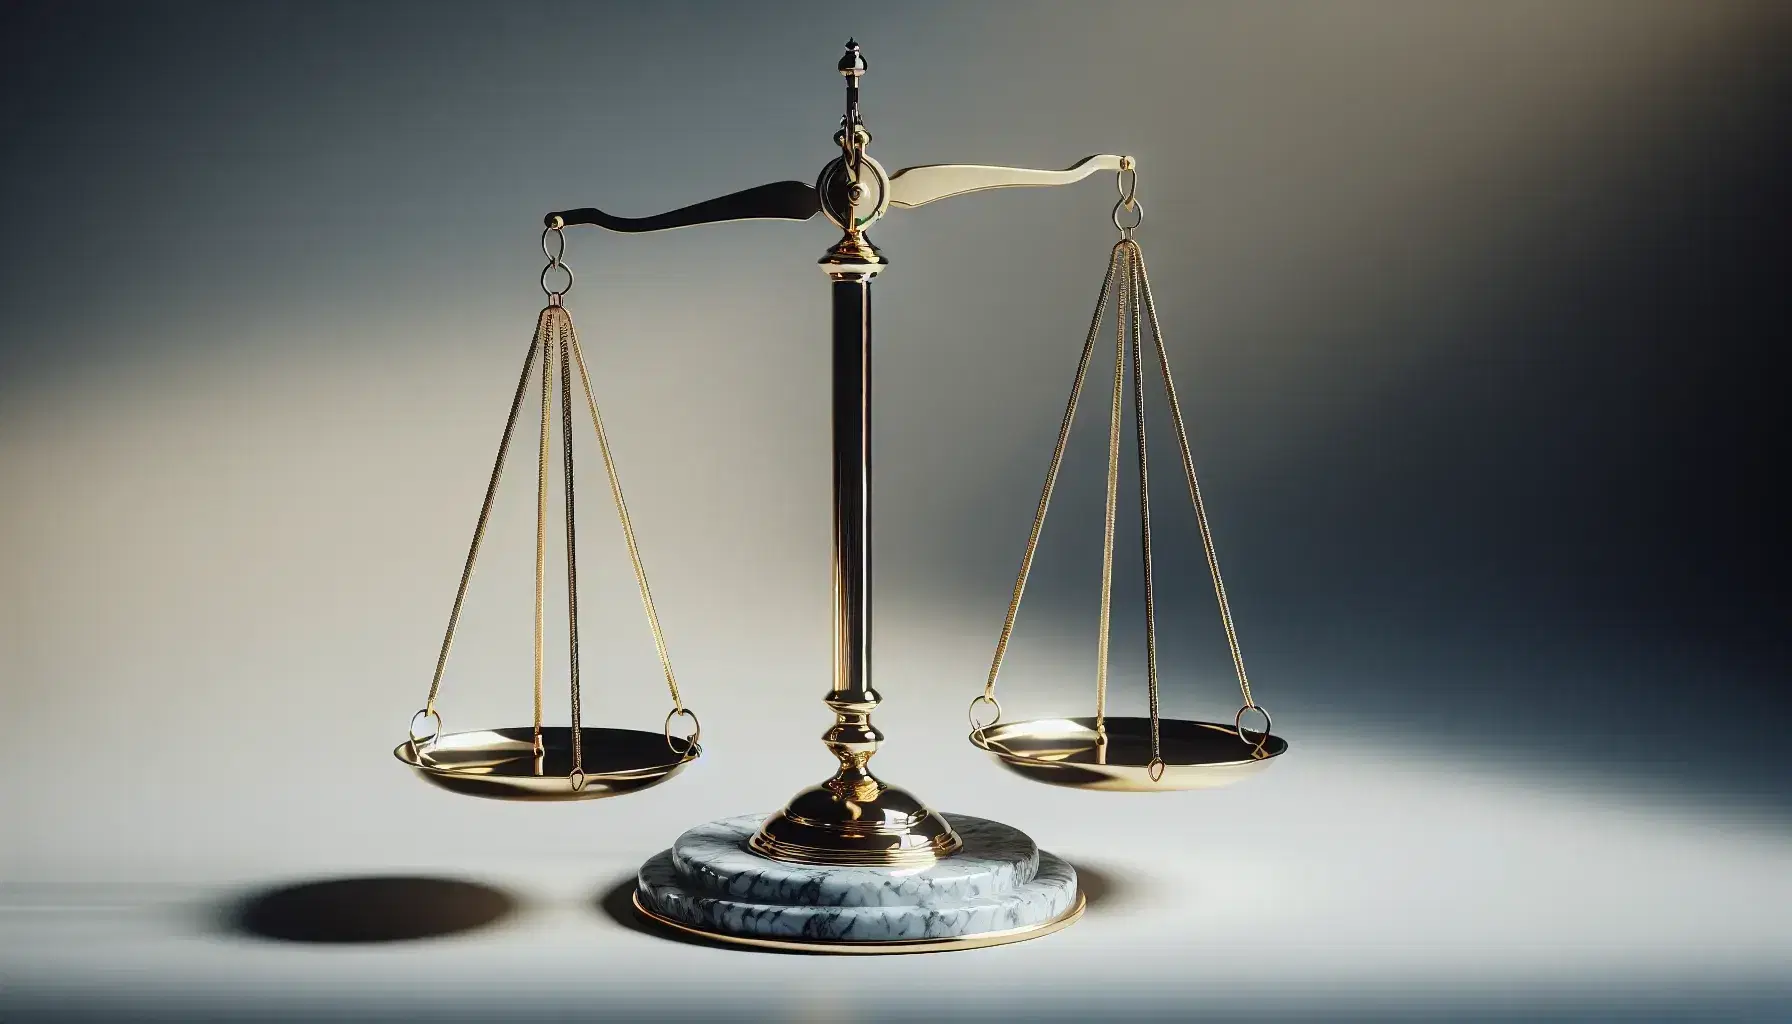 Balanza de la justicia de dos platos en equilibrio, con base de mármol y fondo uniforme, simbolizando la equidad y la ley.